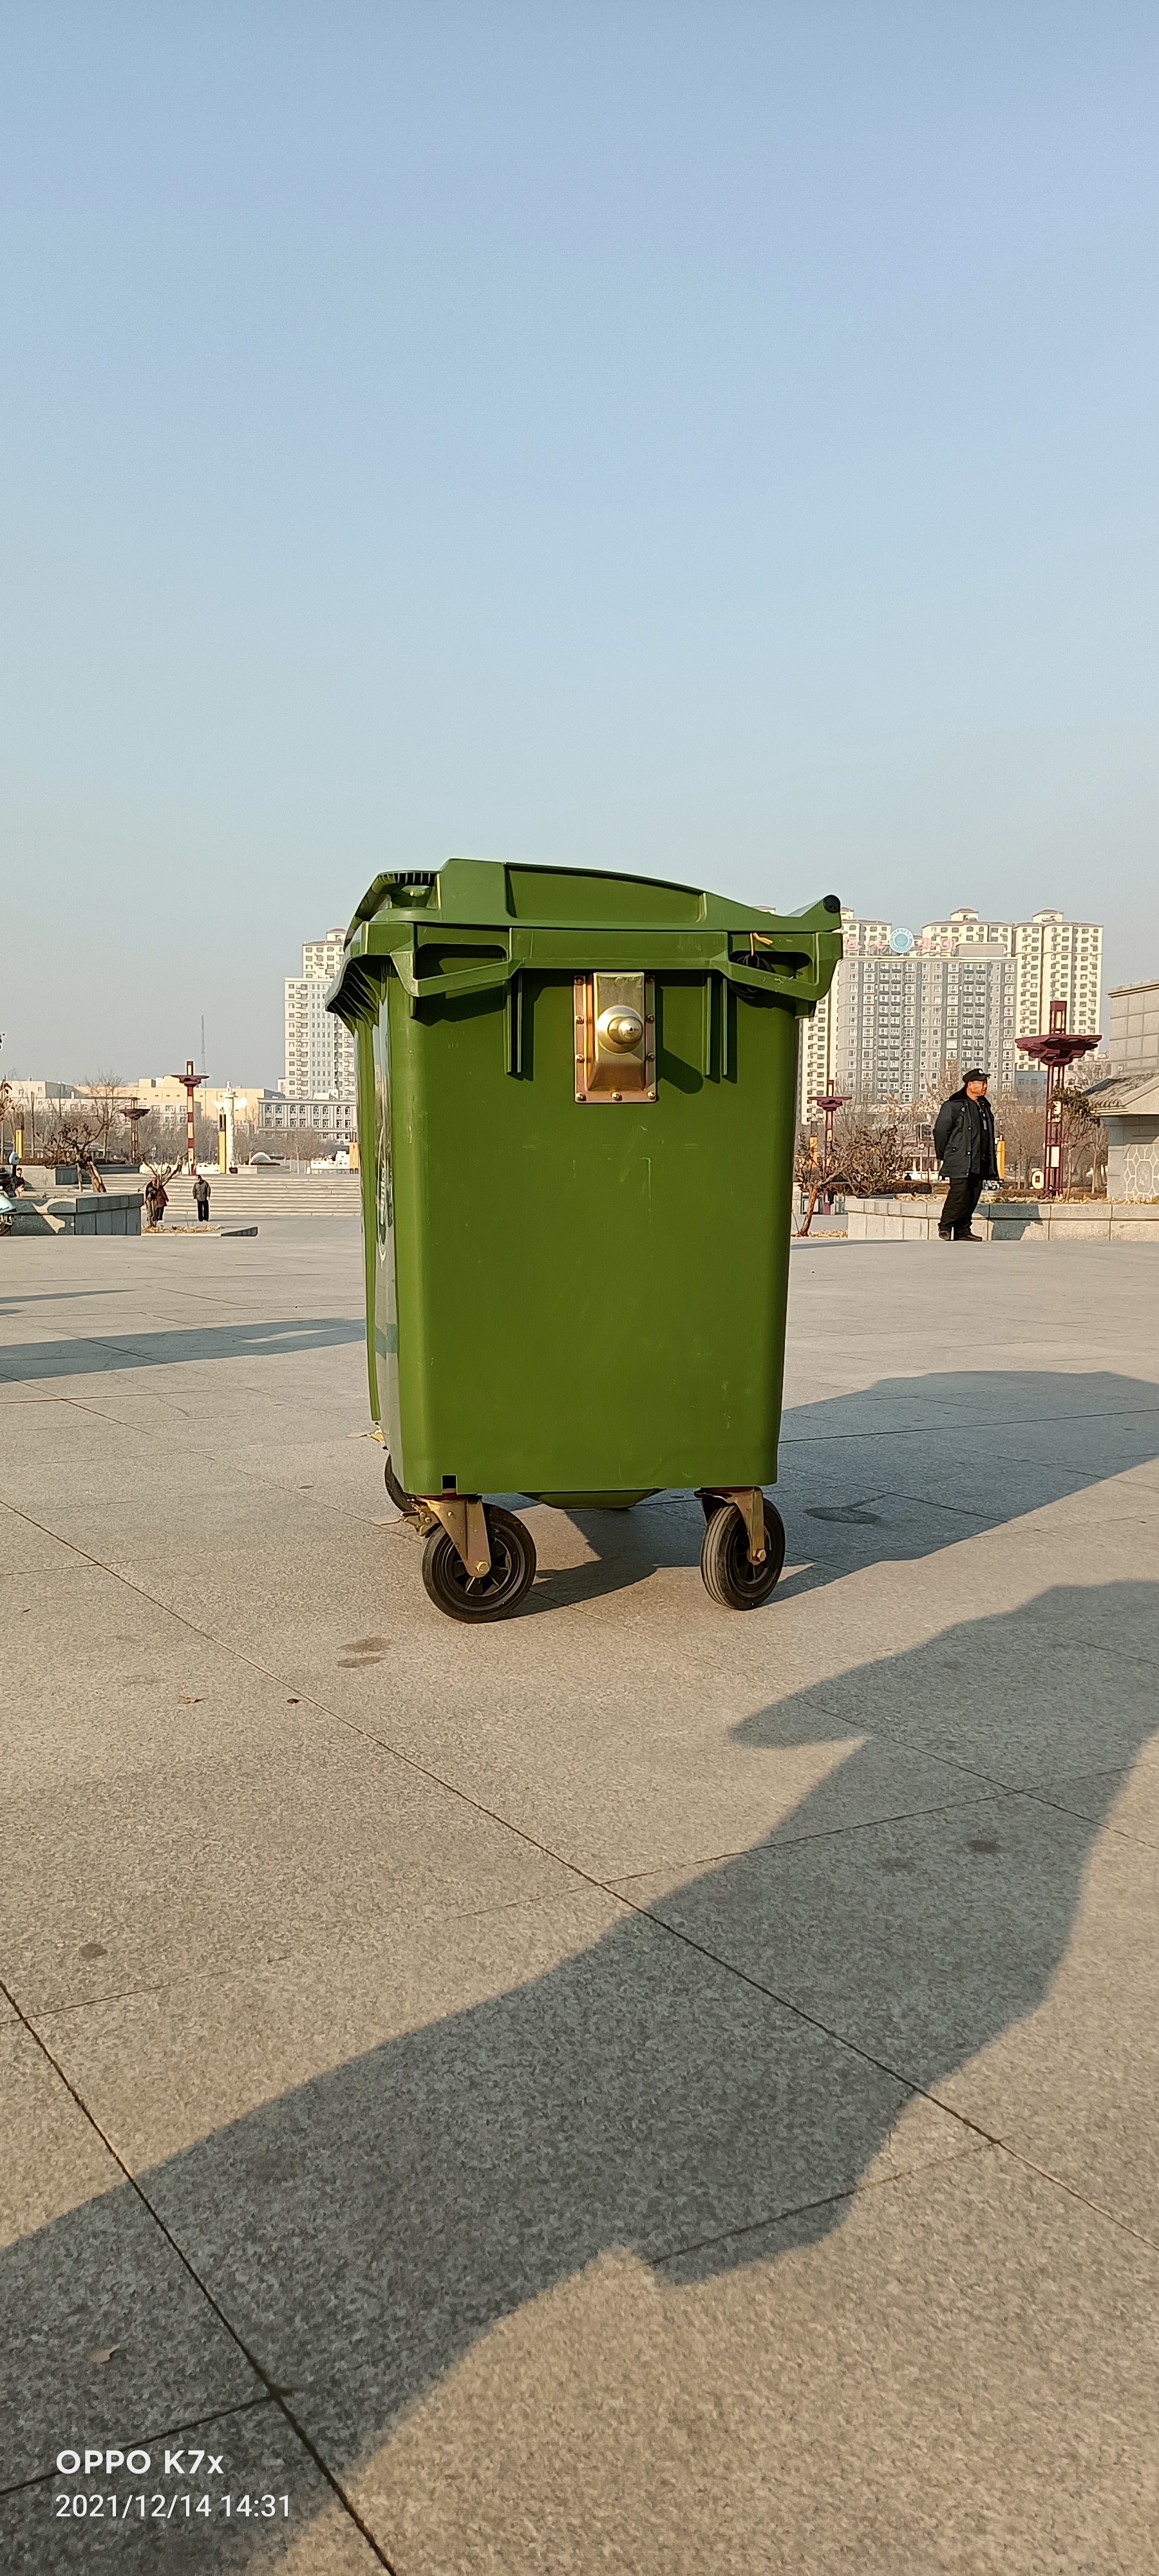 北京环卫垃圾桶耐用型垃圾桶  其他垃圾桶